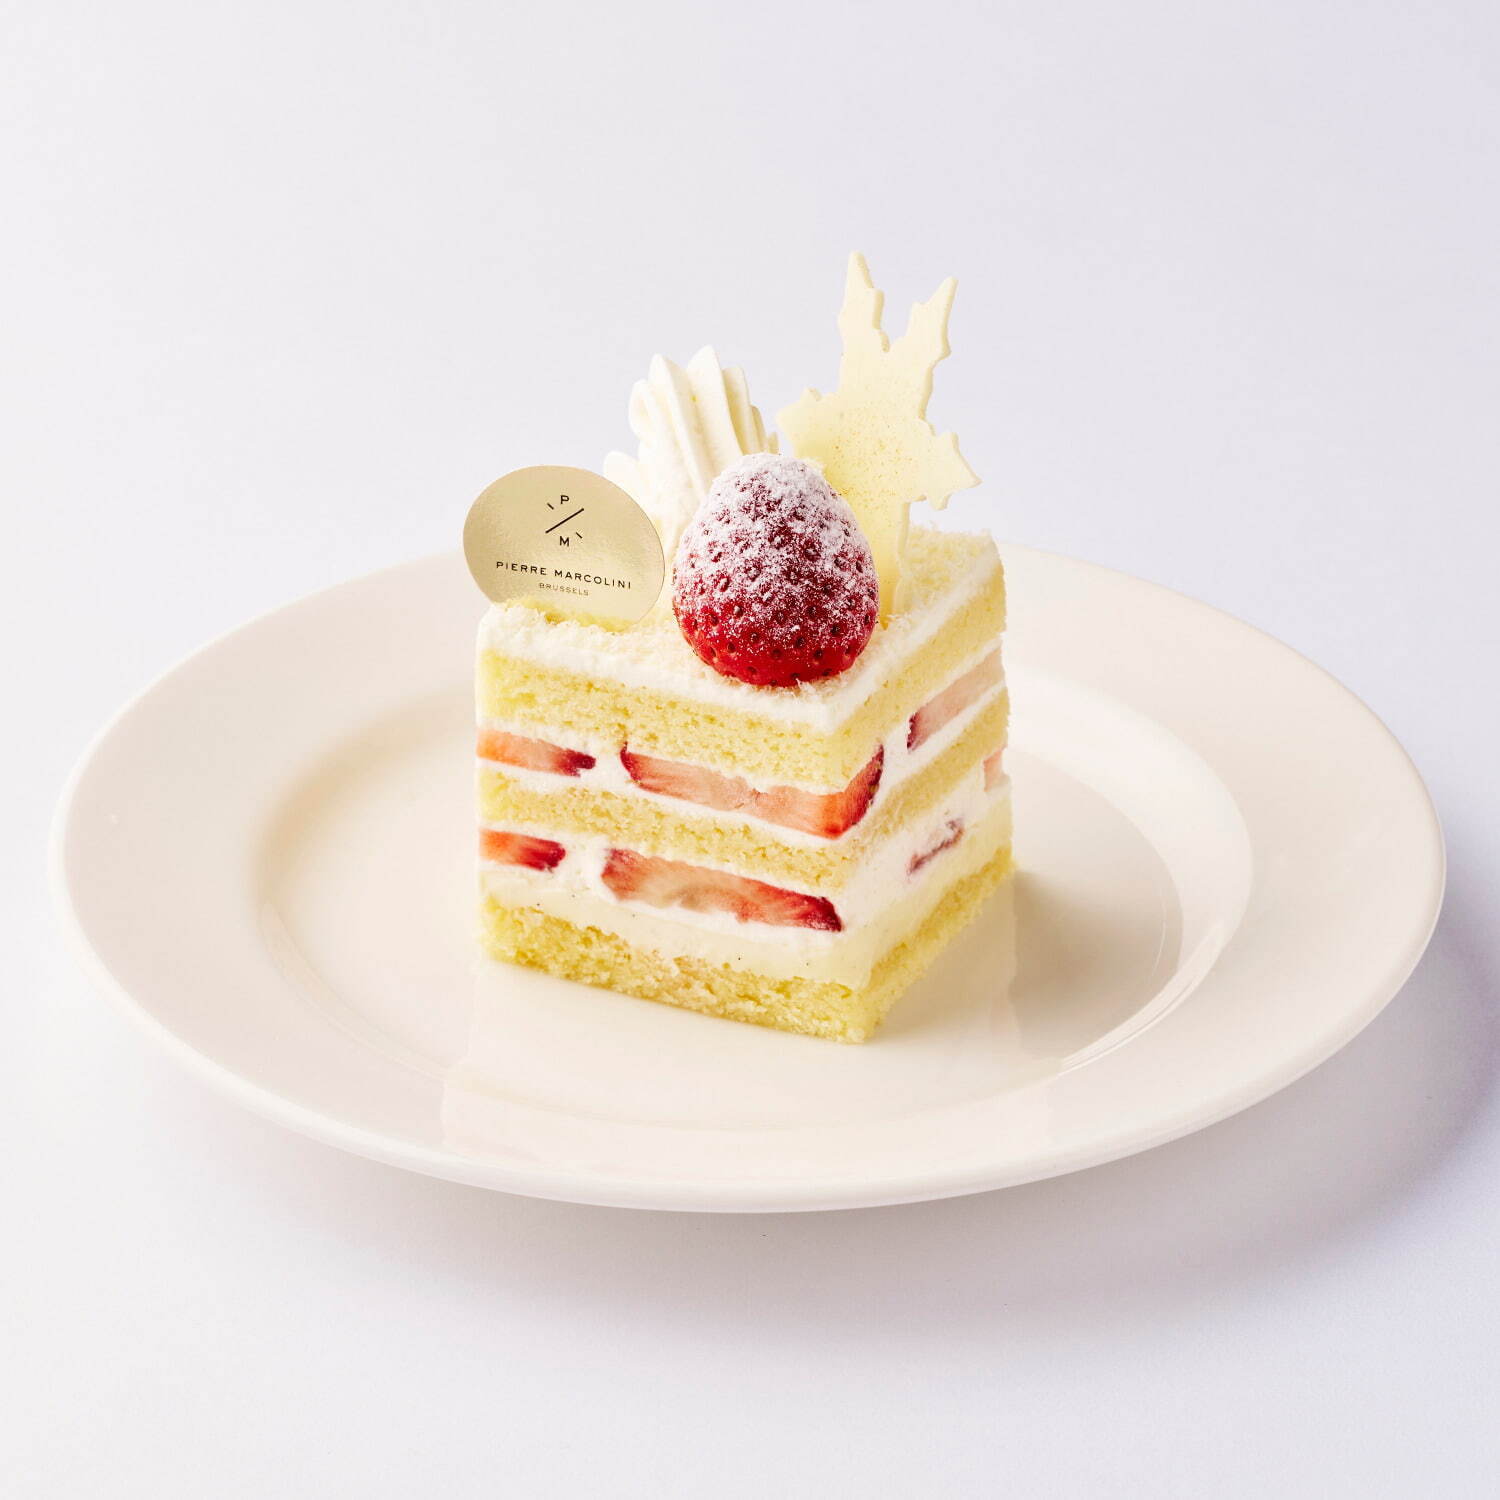 「ショートケーキ ショコラ ブラン ノエル」単品 1,210円